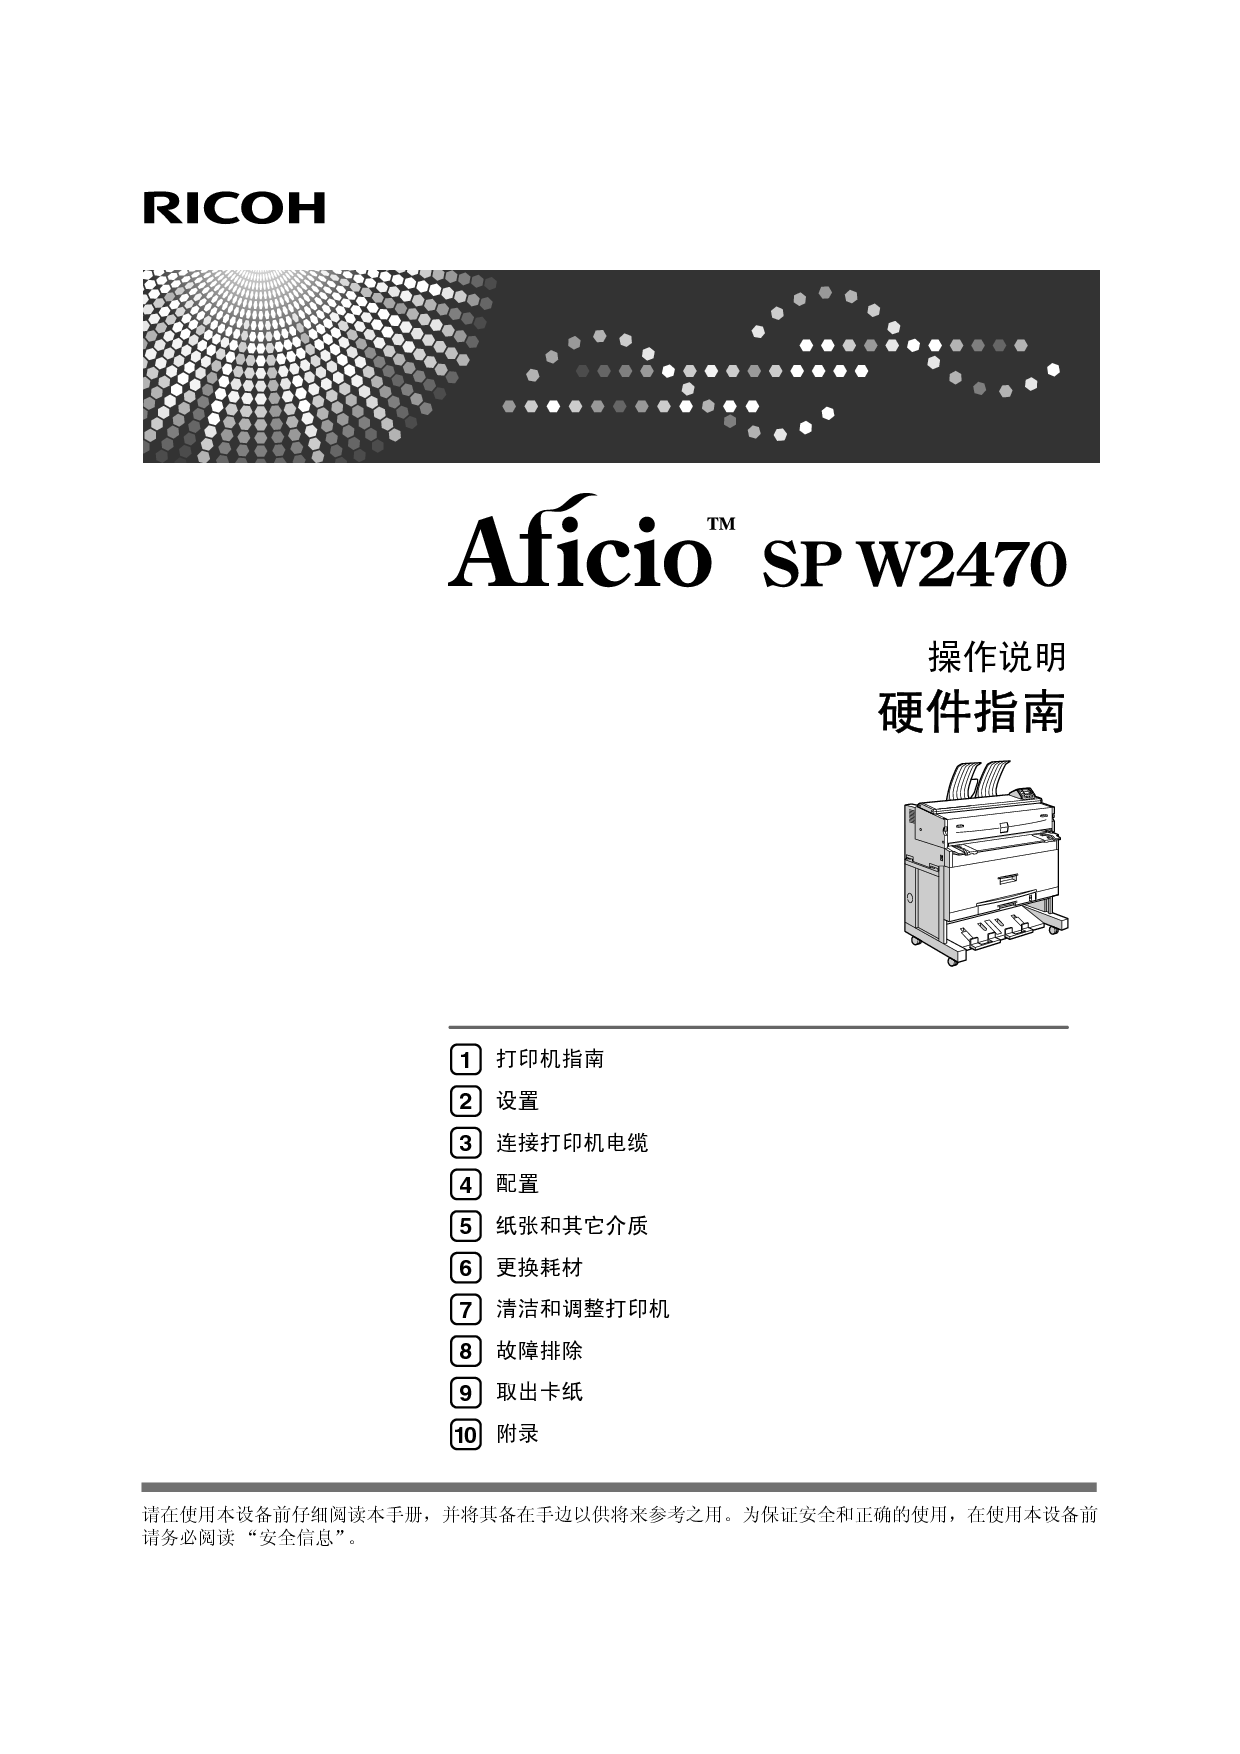 理光 Ricoh Aficio SP W2470 硬件 使用说明书 封面